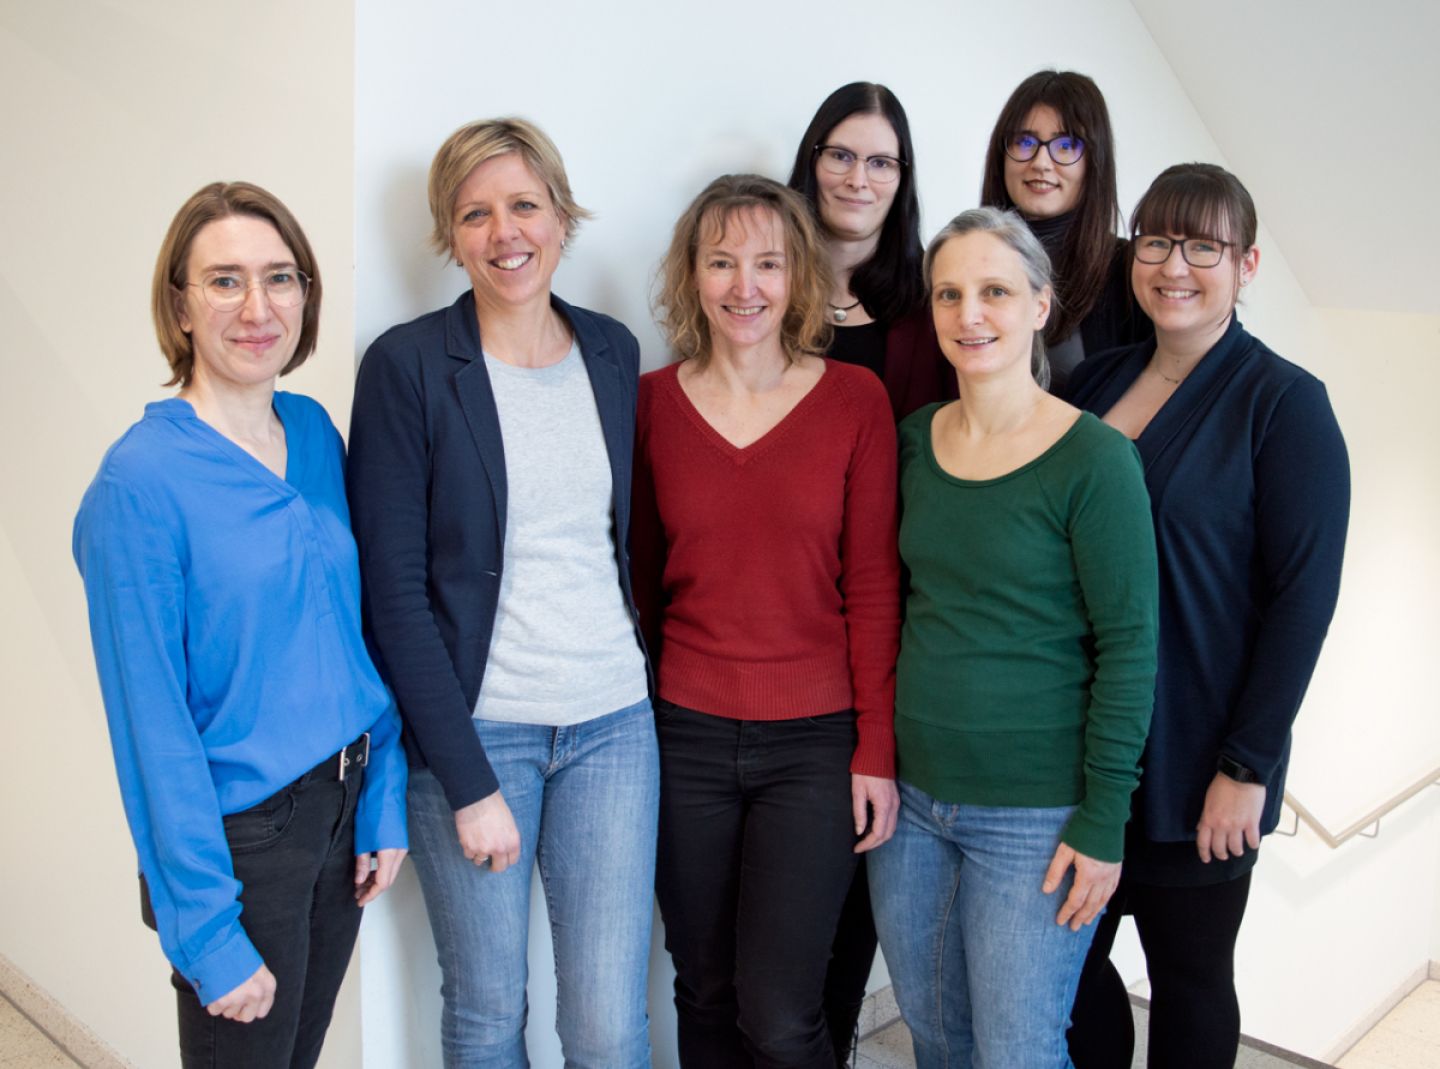 Die 7 Mitarbeiterinnen der Internetredaktion von www.krebsinformationsdienst.de